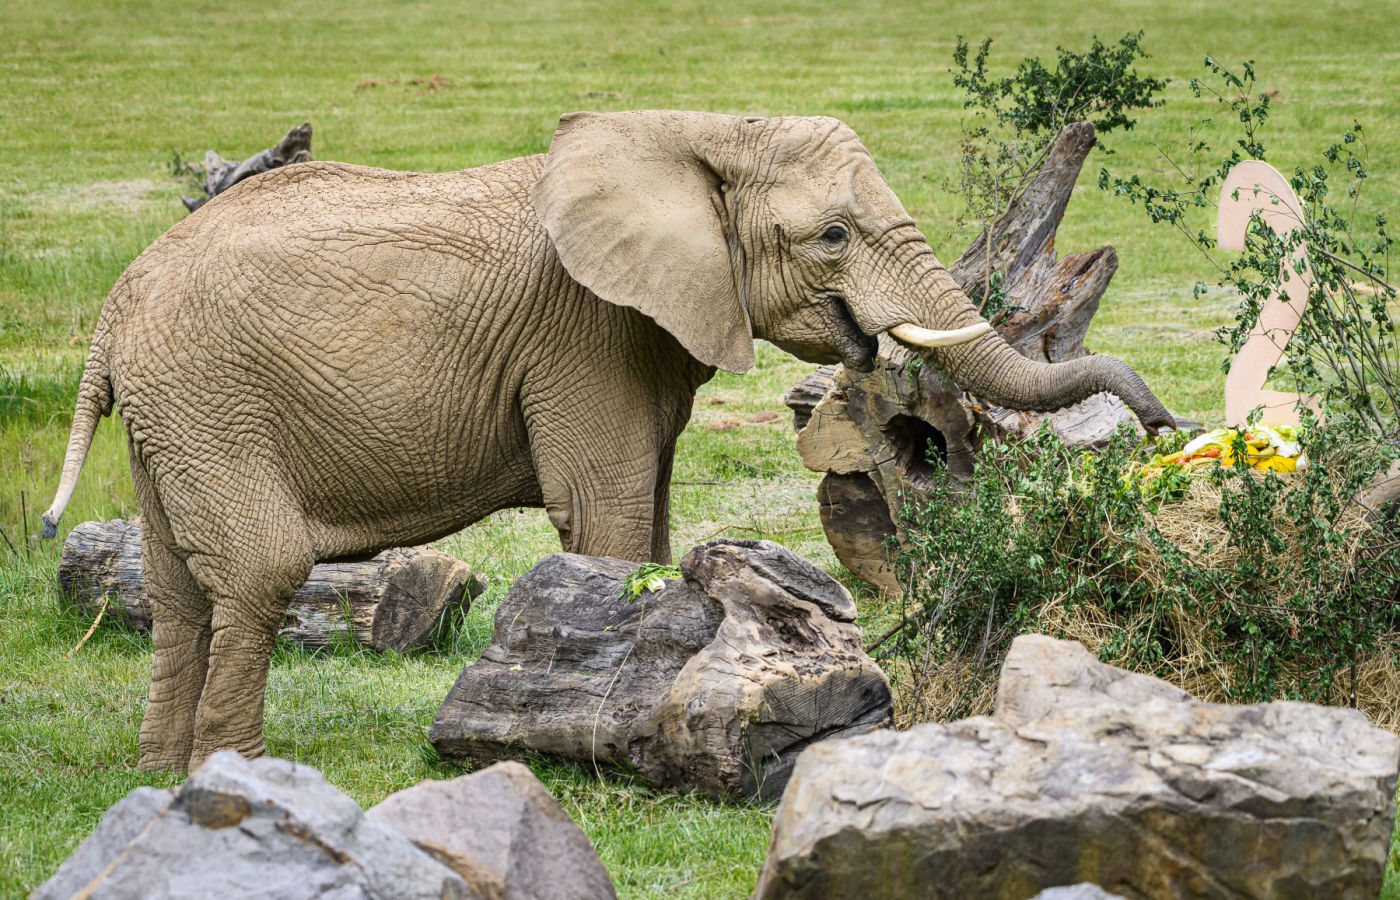 Oslavy u slonů afrických